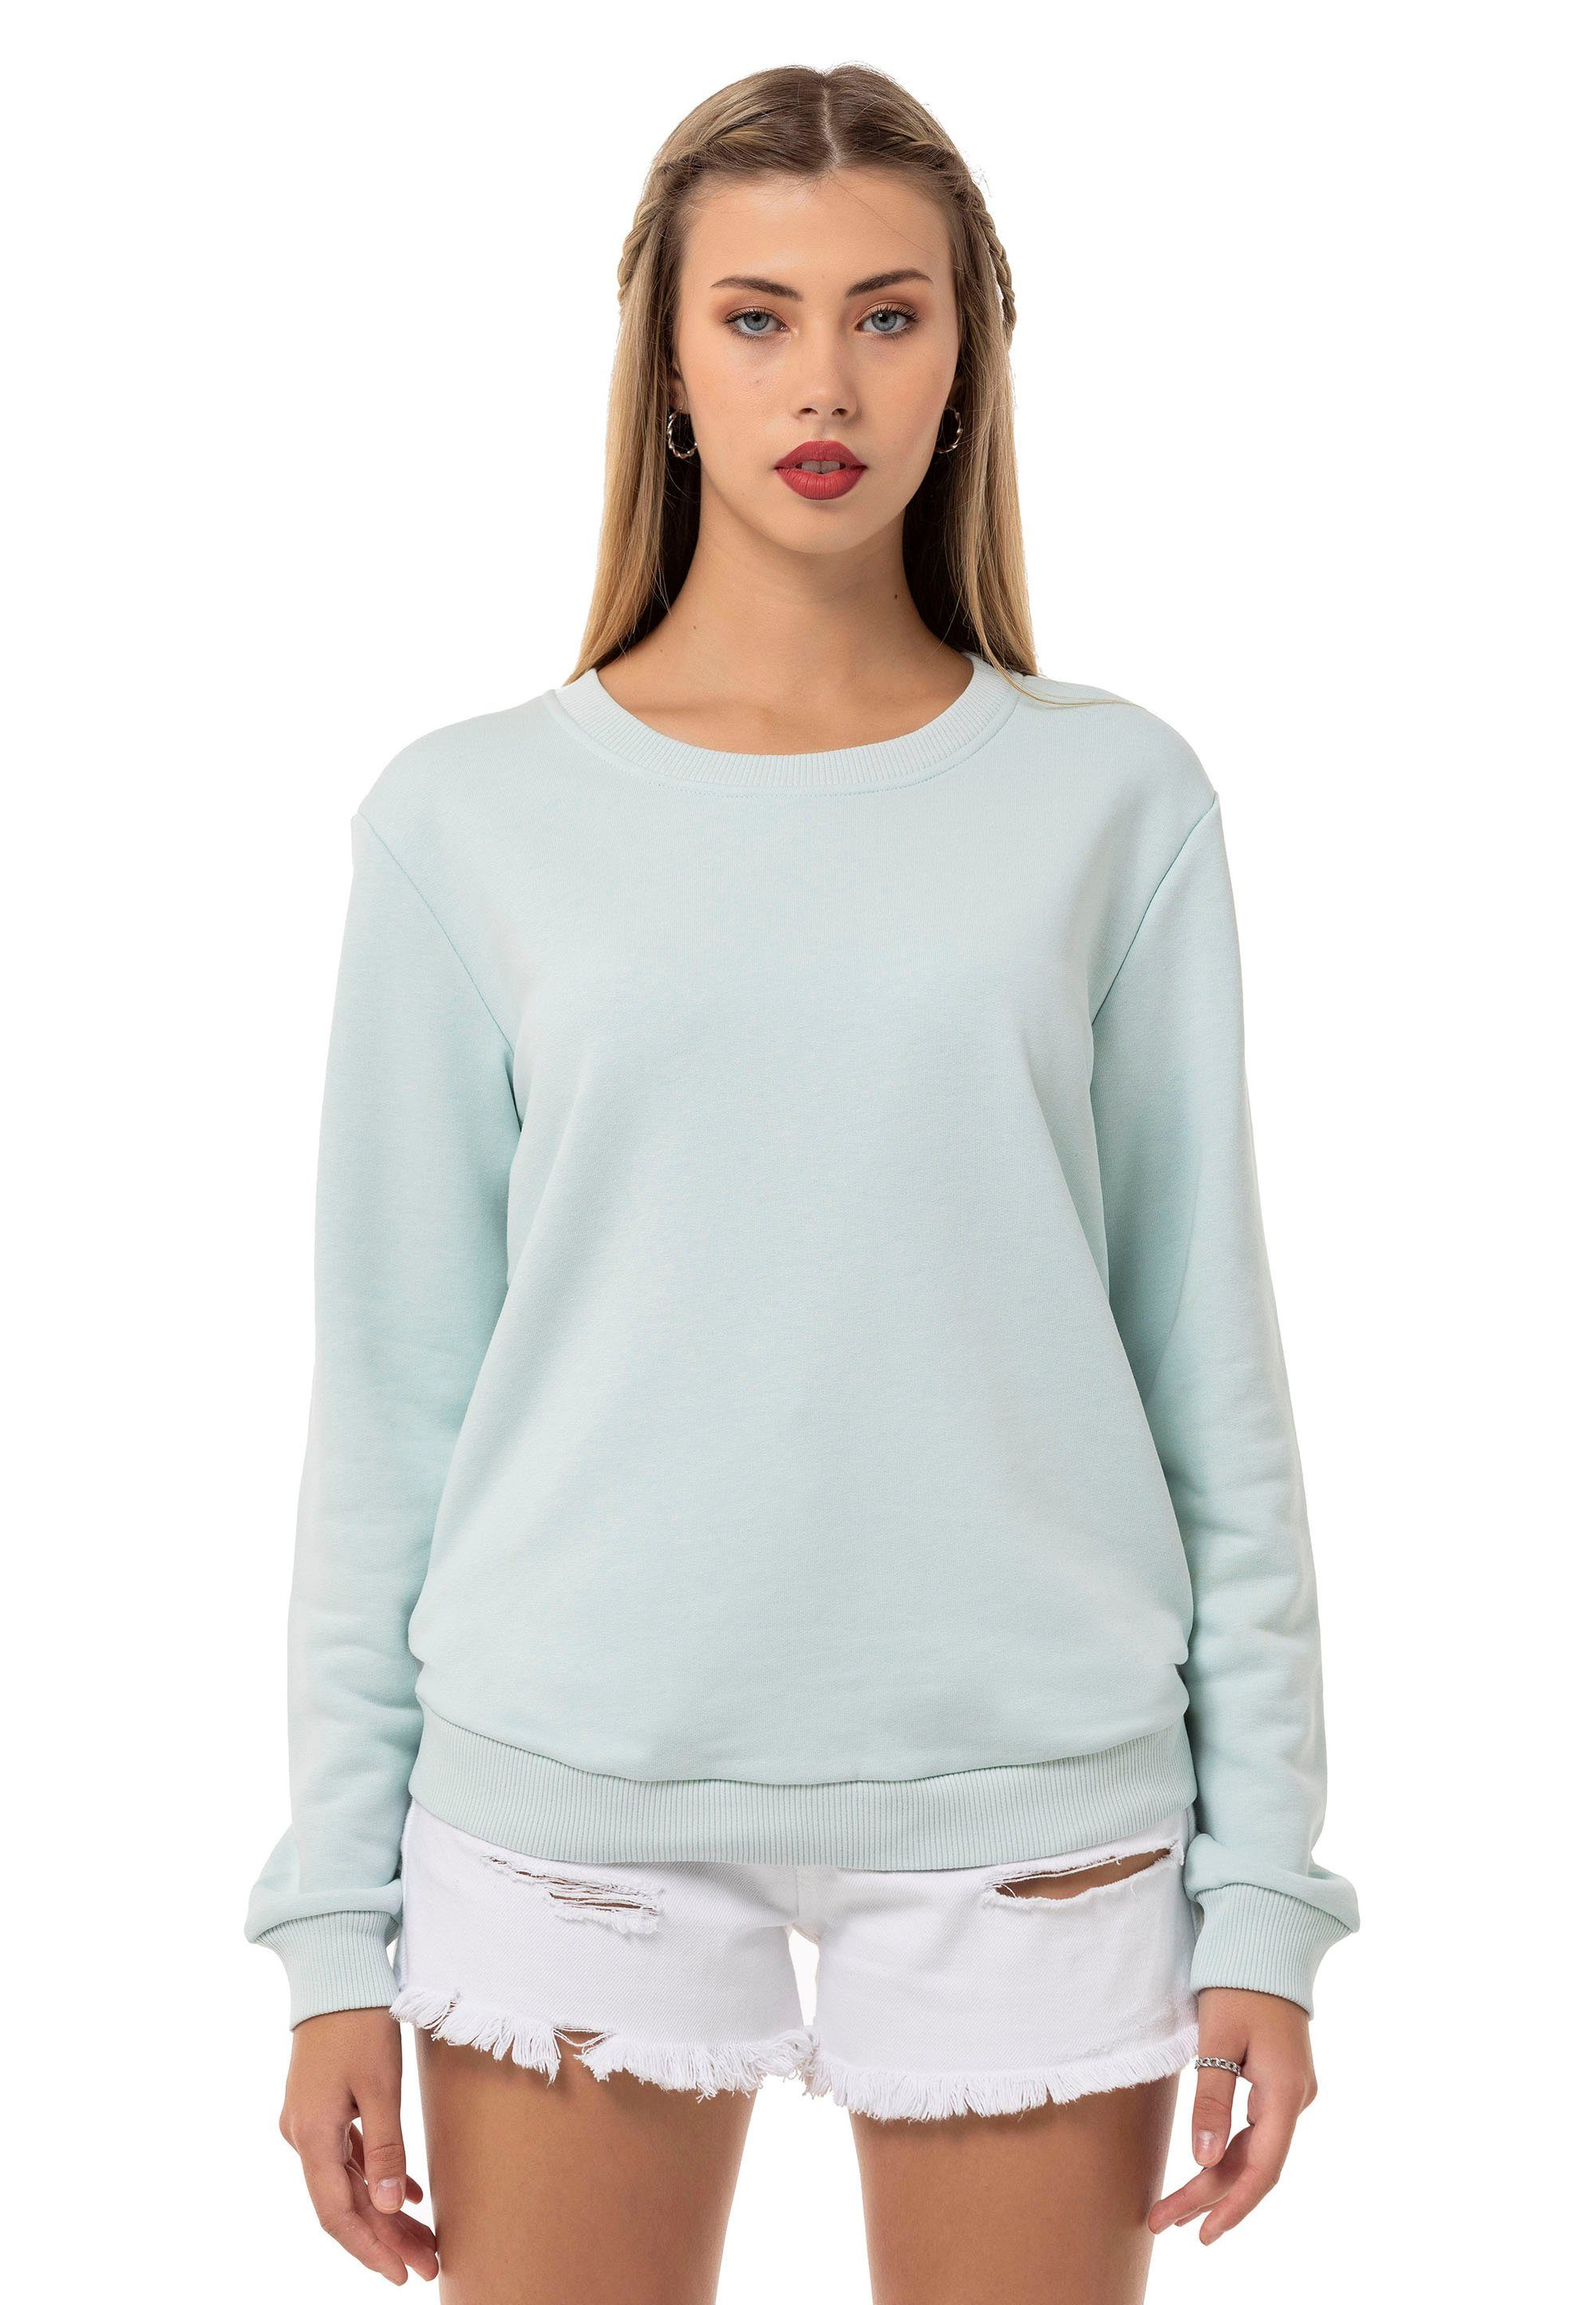 Mint Pullover Sweatshirt Premium Qualität Rundhals RedBridge